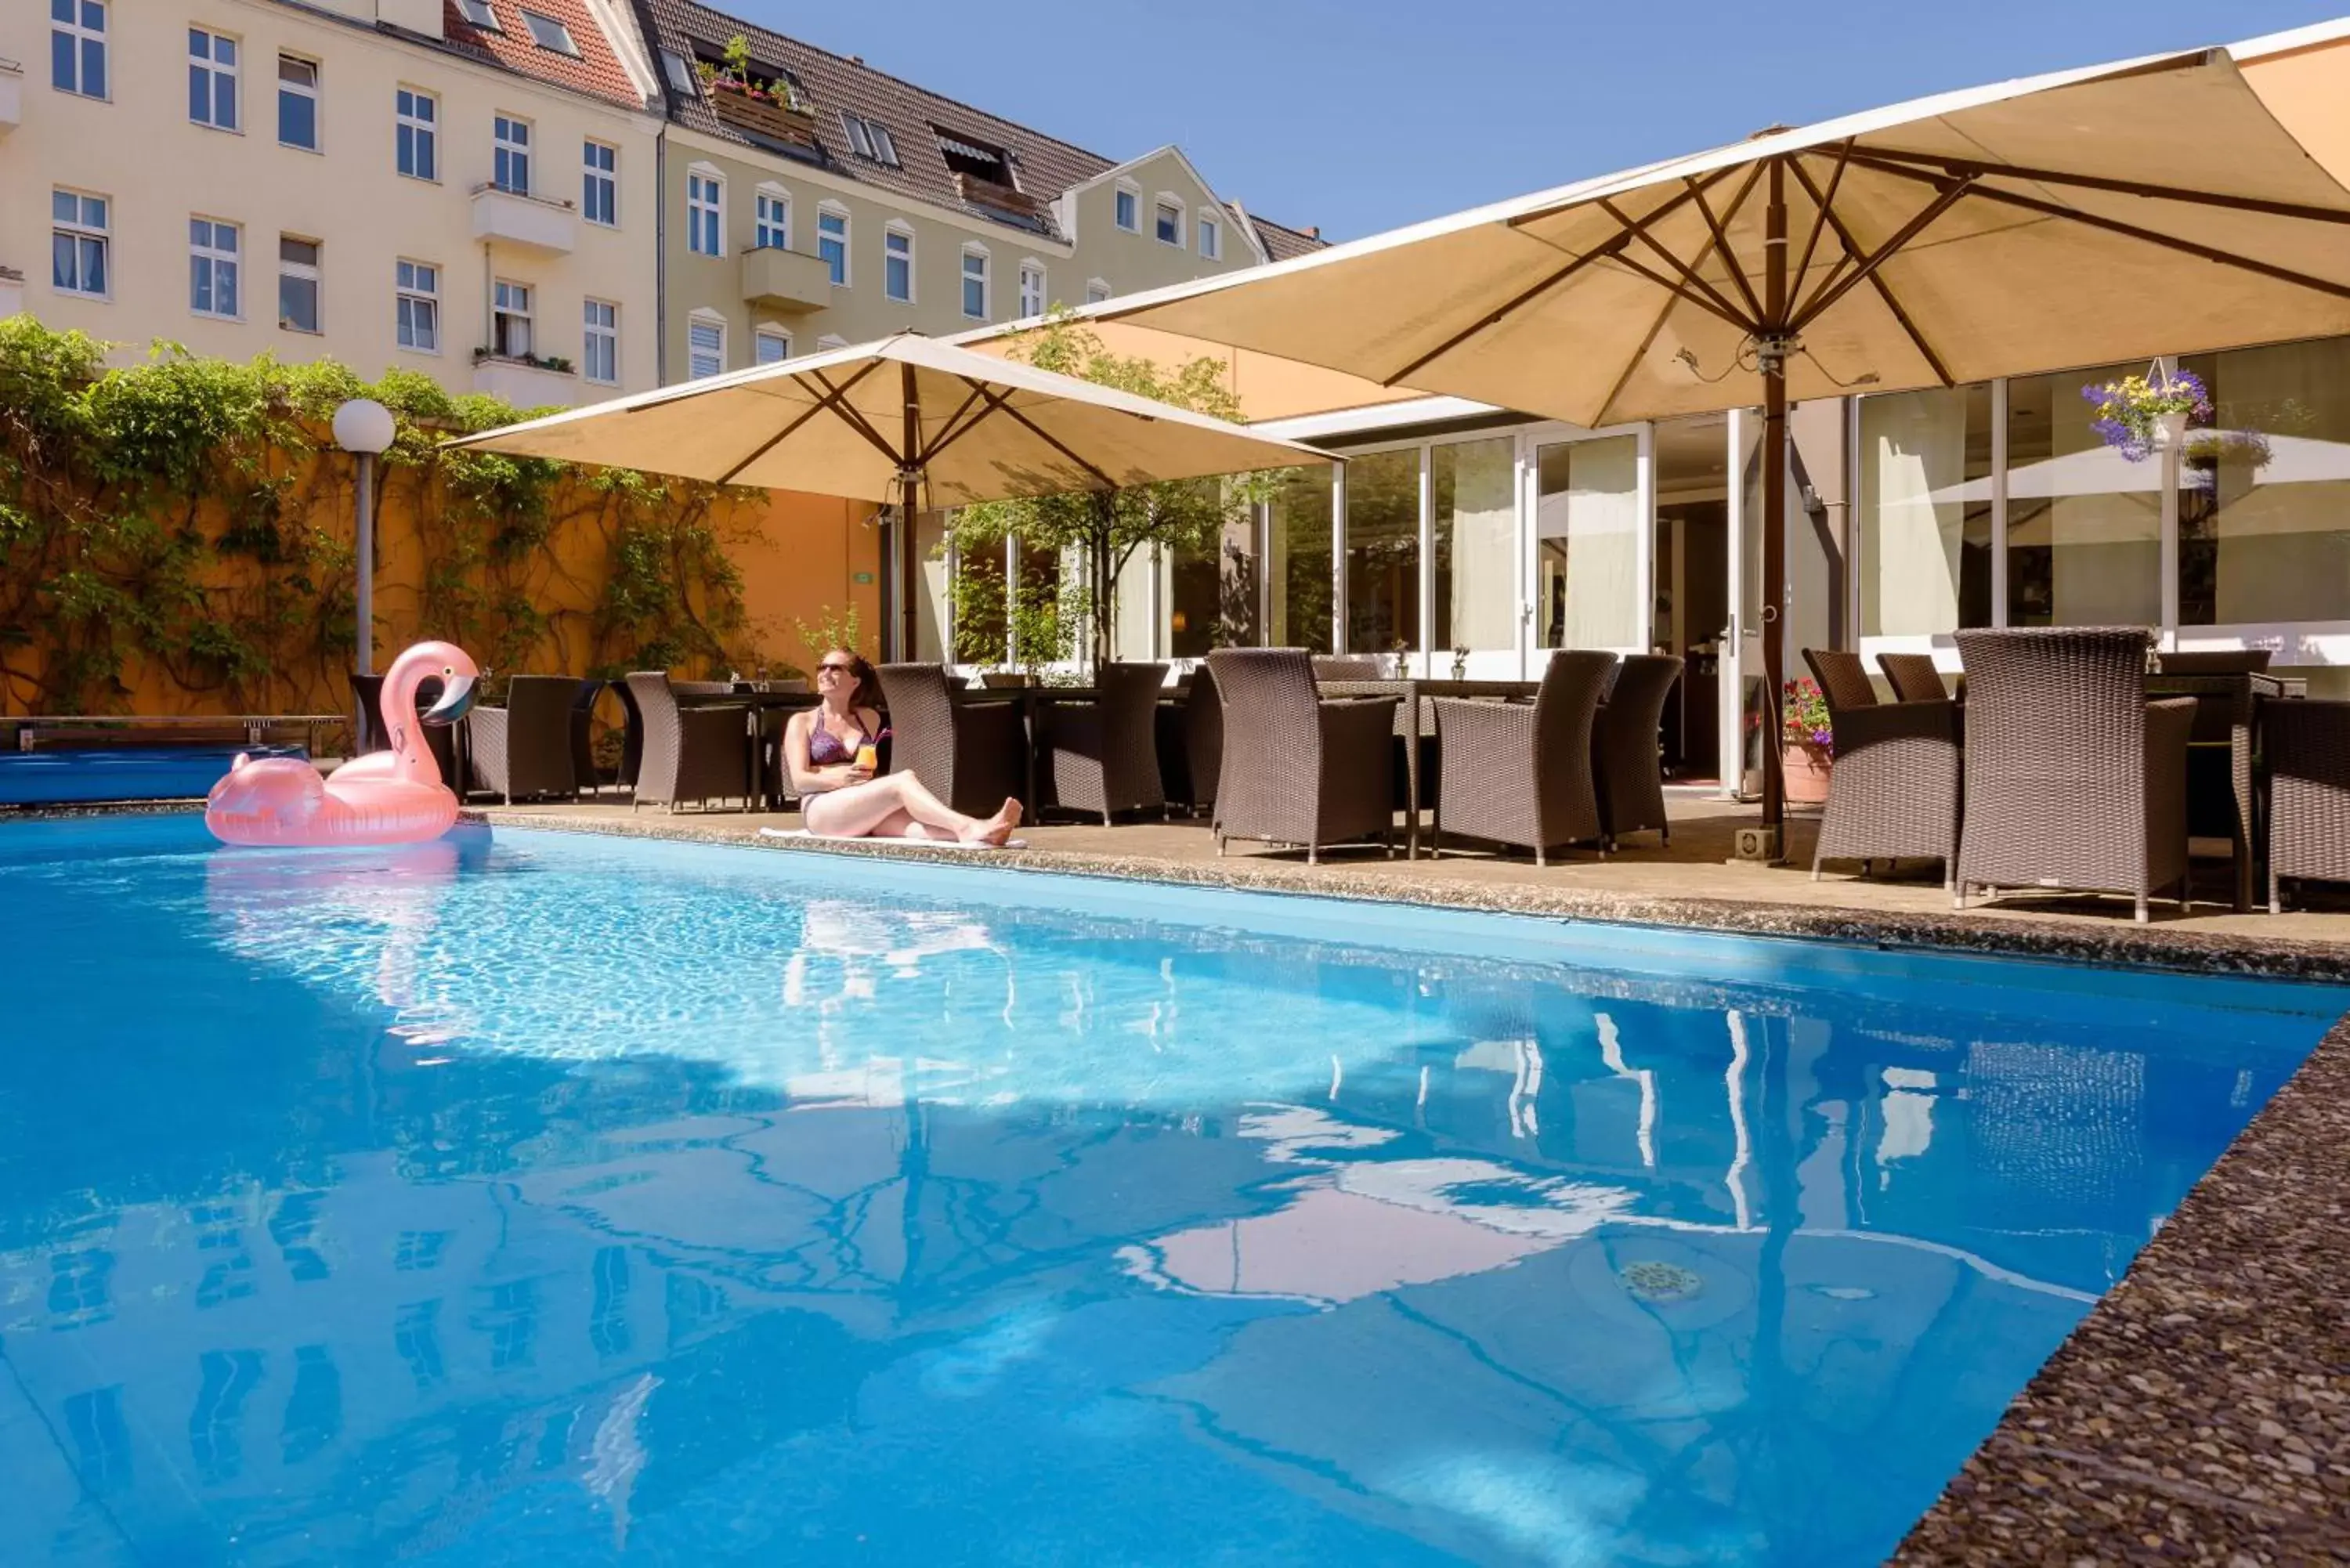 Swimming Pool in Mercure Hotel Berlin City West